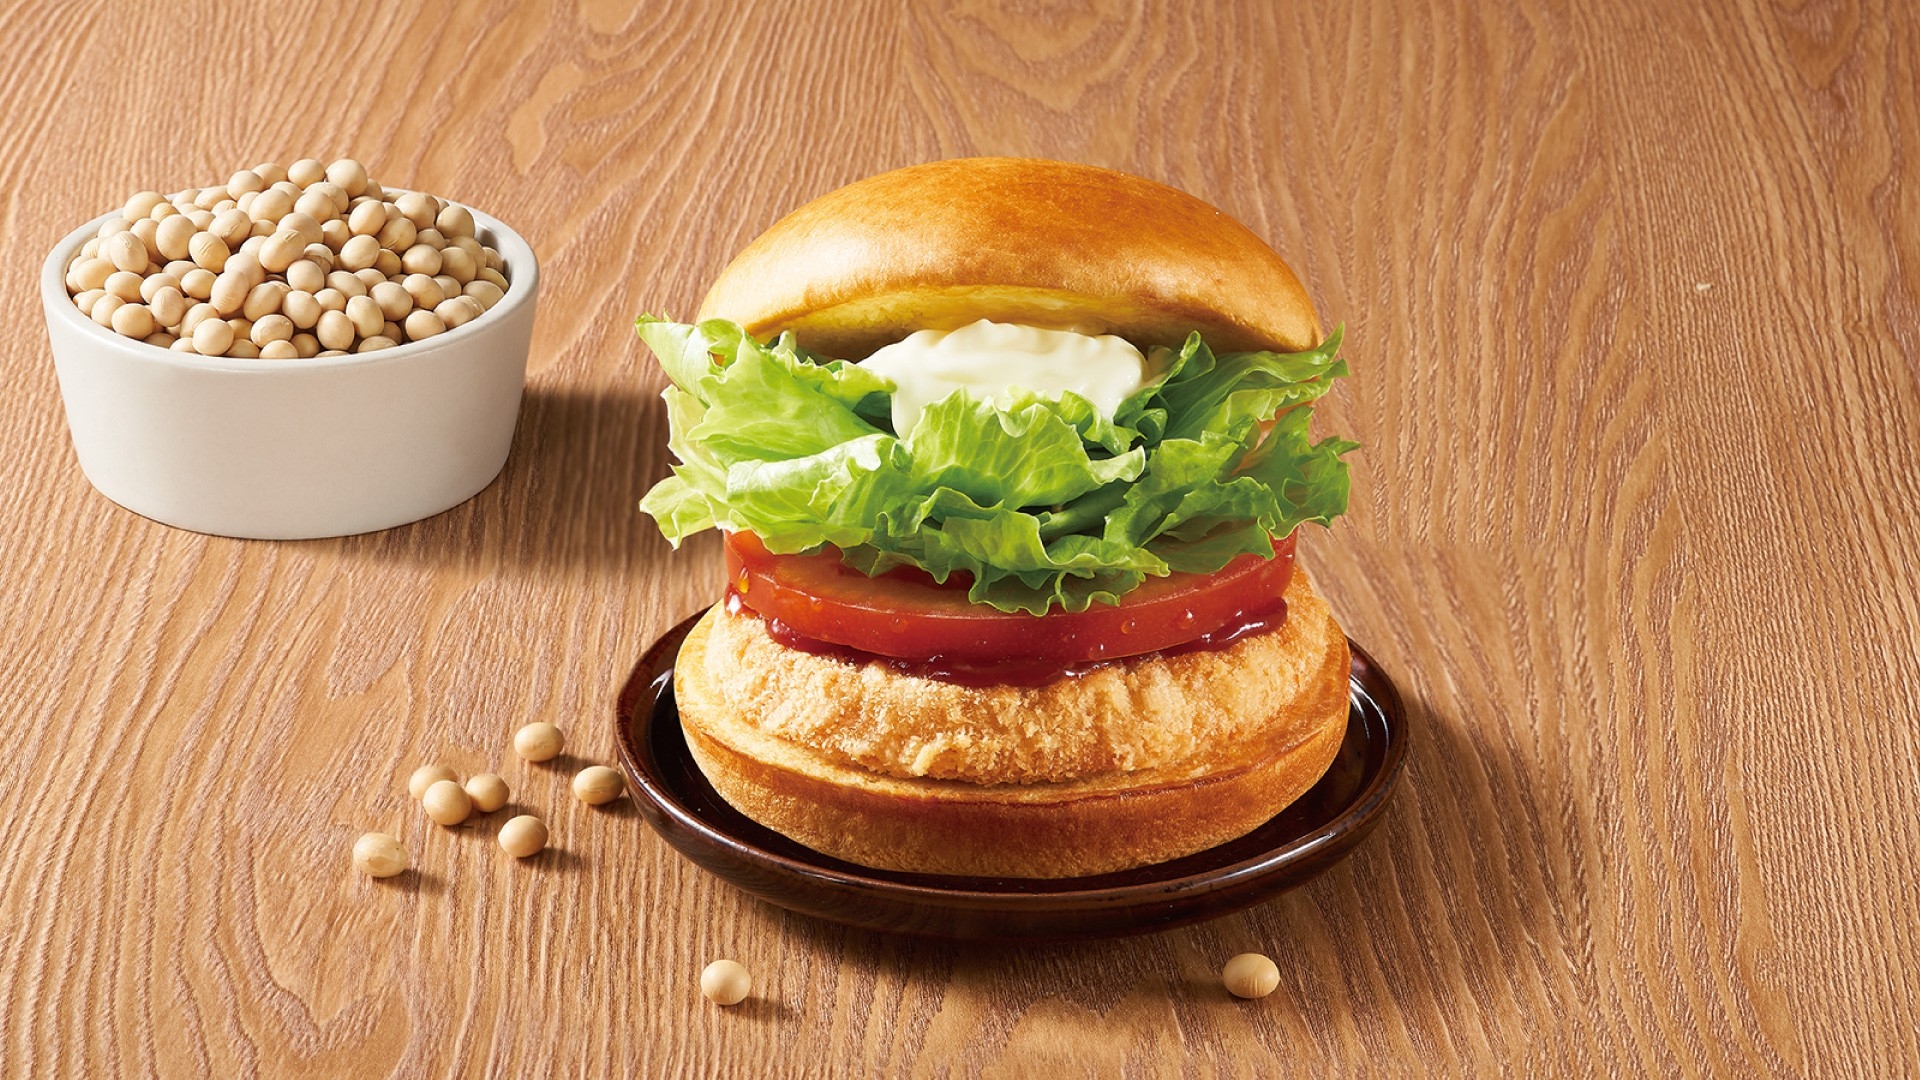 摩斯汉堡新推出「元气豆腐鸡布里欧堡」。图／摩斯汉堡提供